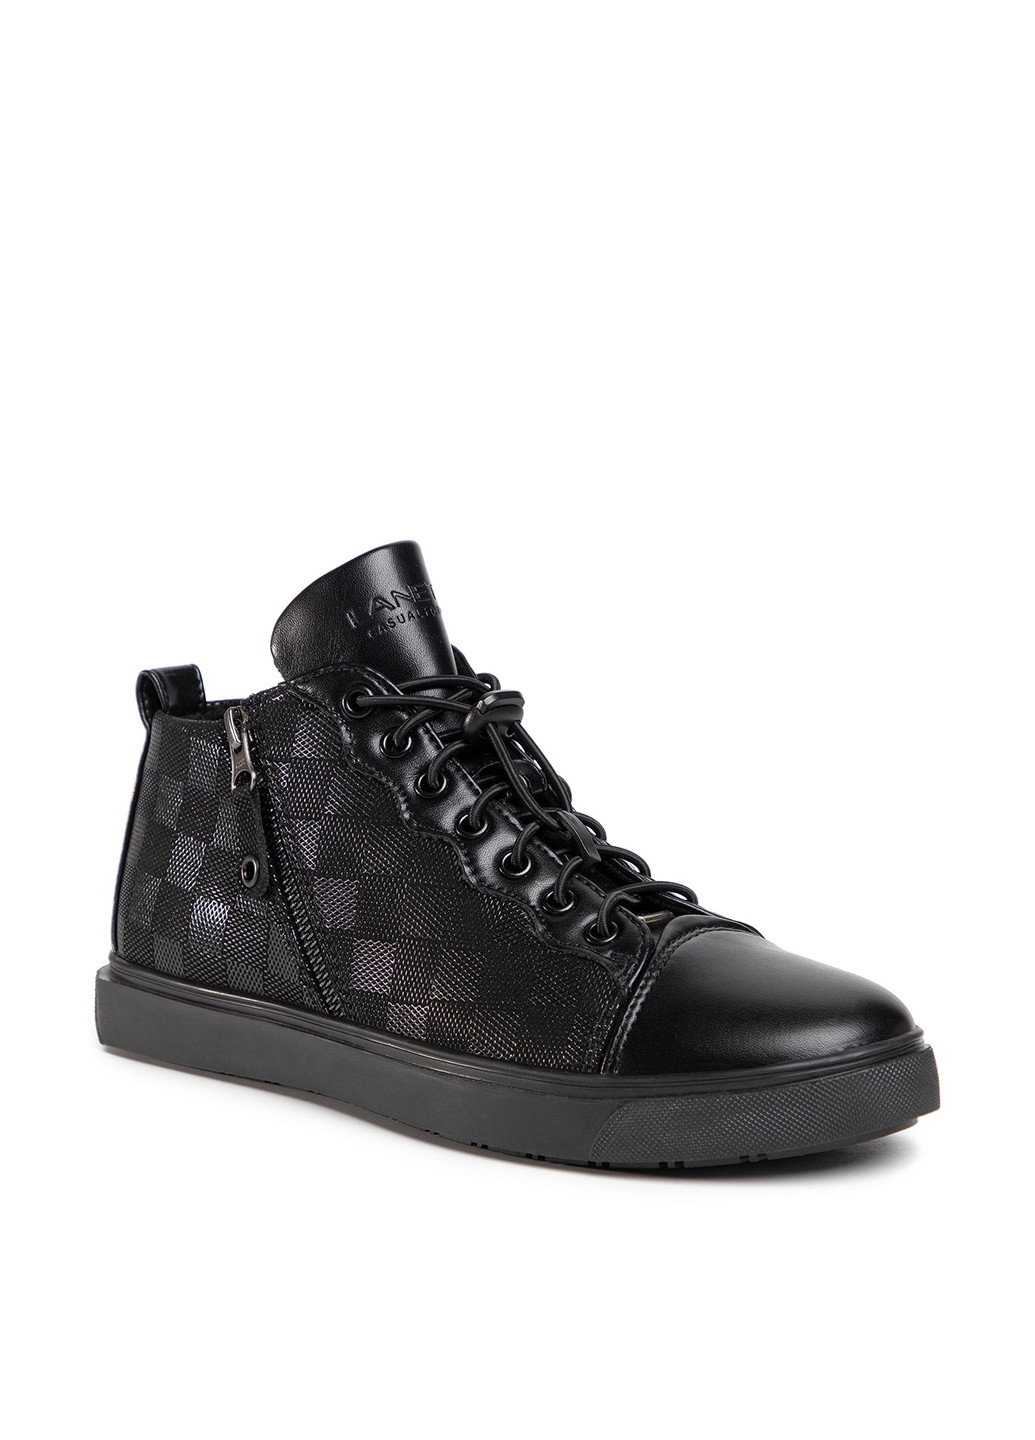 Черные осенние черевики mbs-ibiza-01 Lanetti